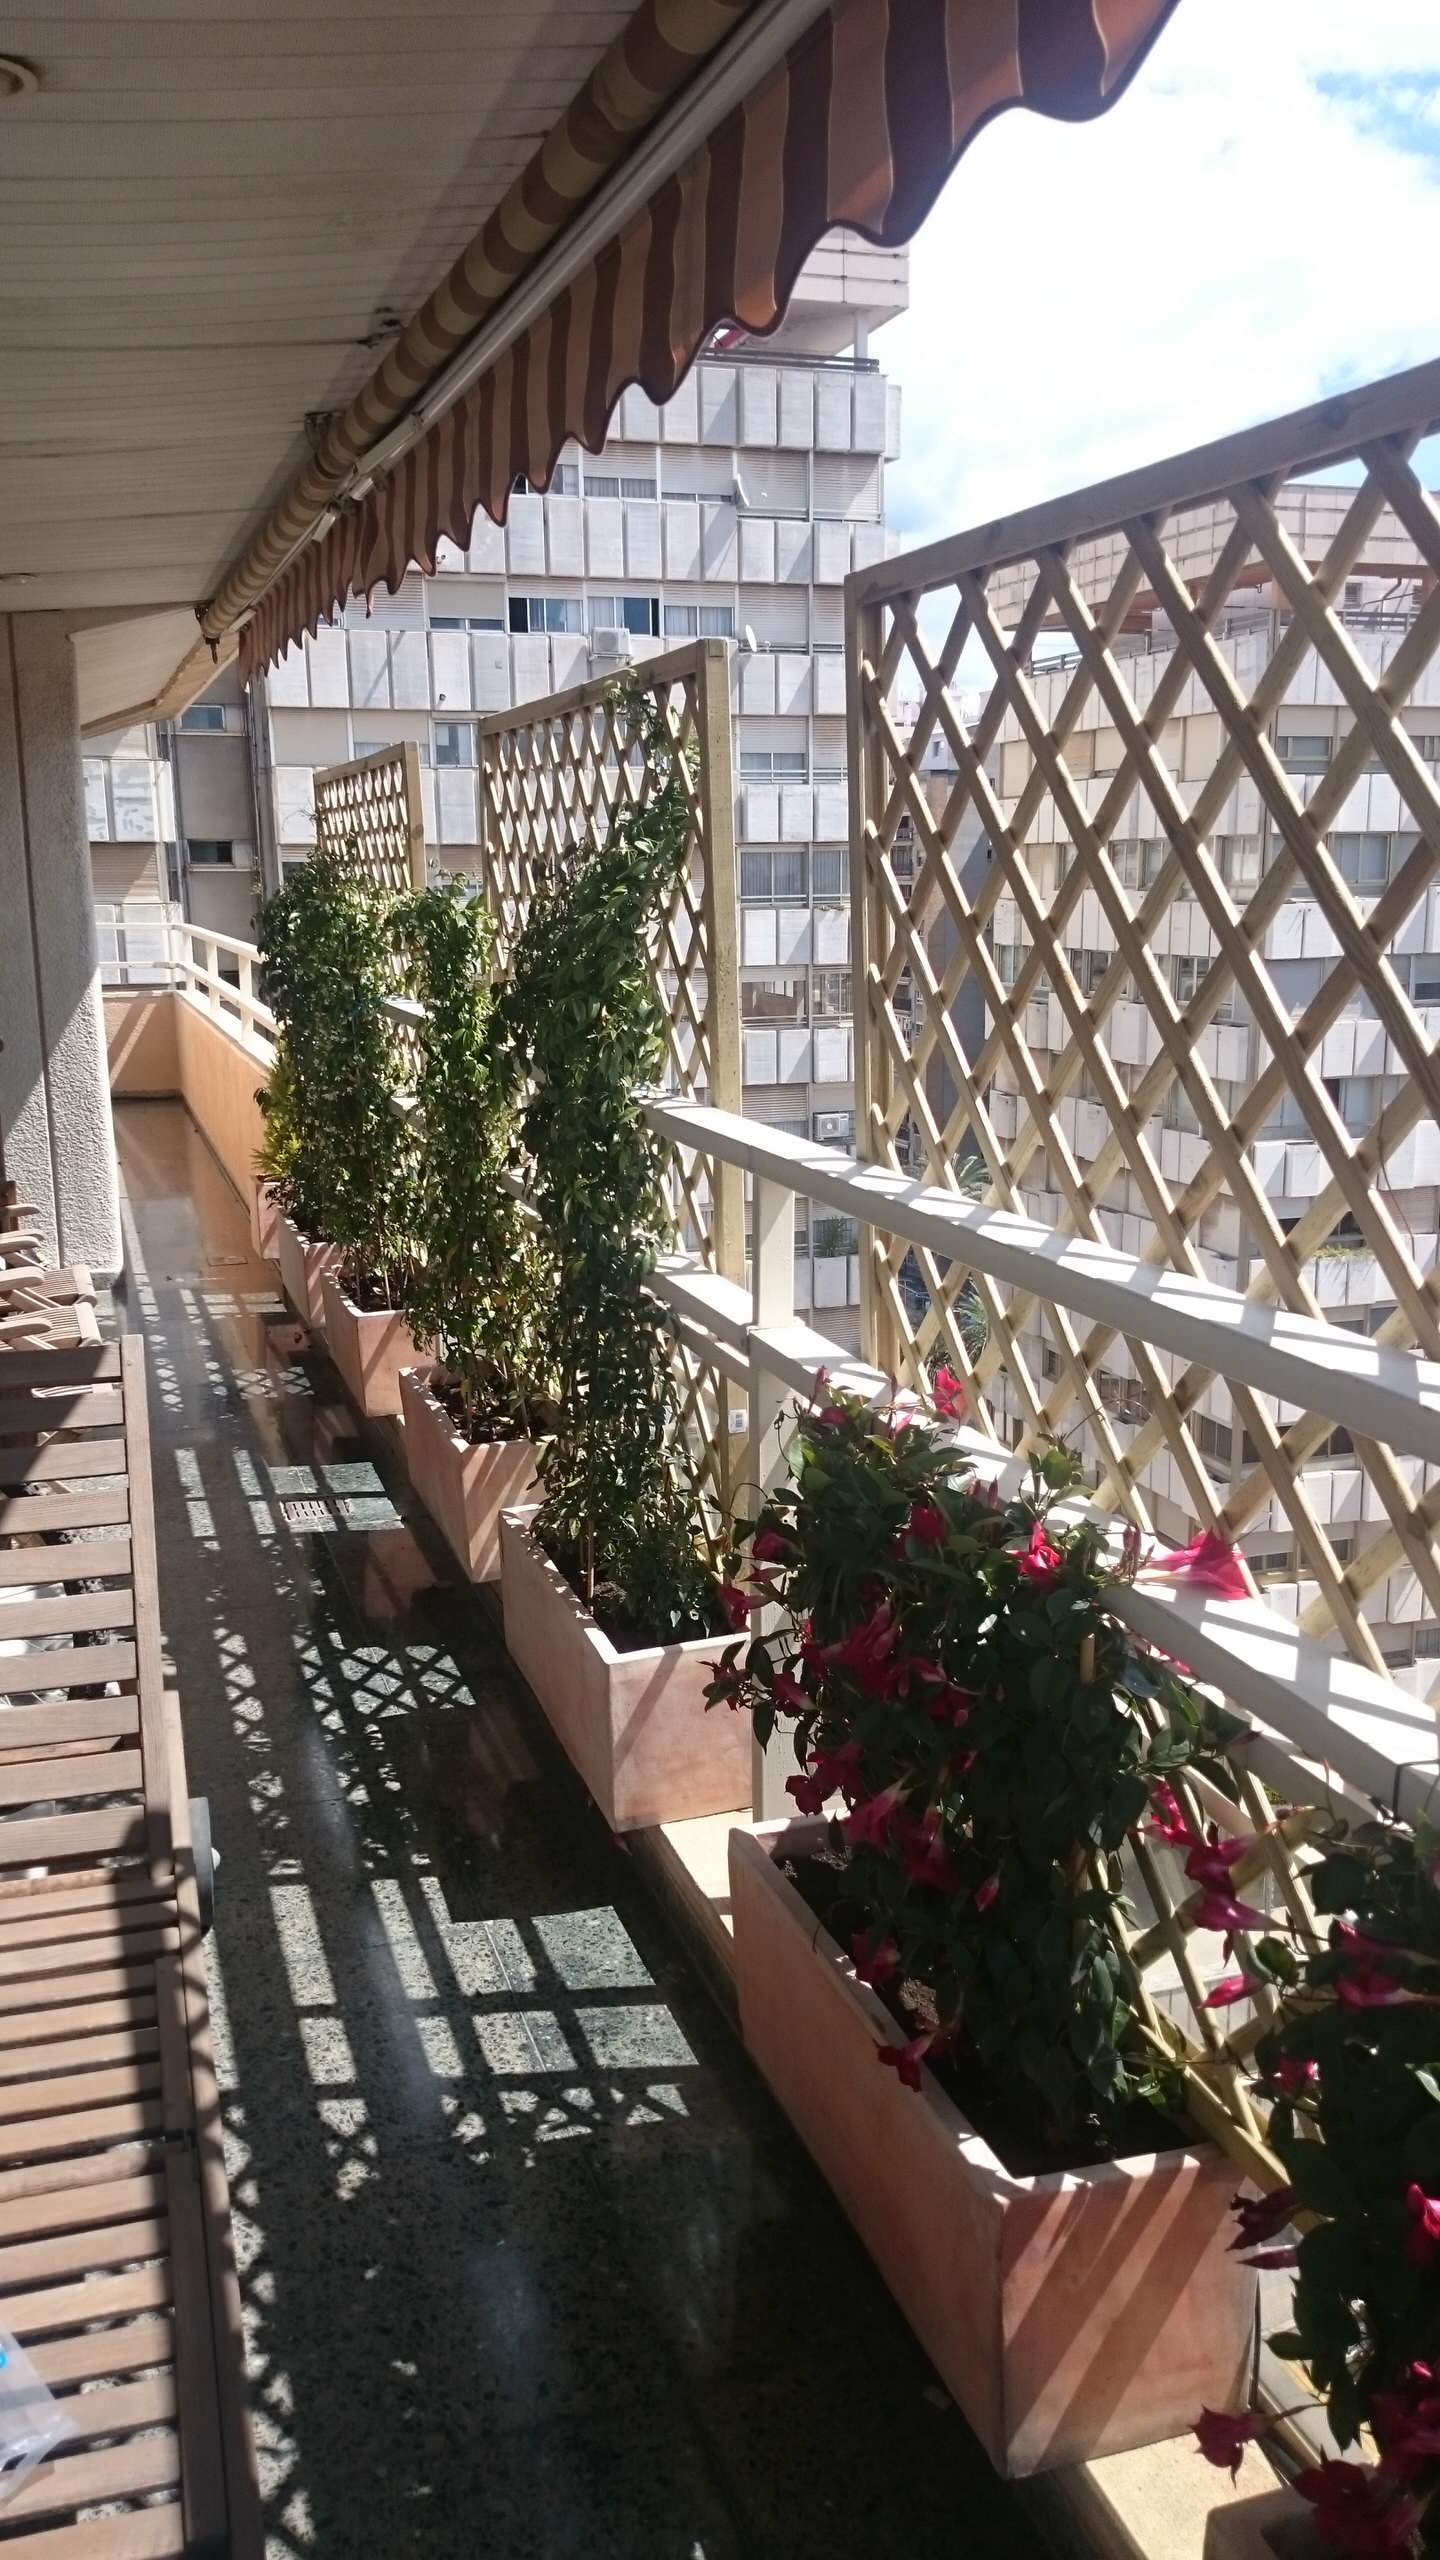 5 идей для узкого балкона (50 фото) | Дизайн узкой лоджии